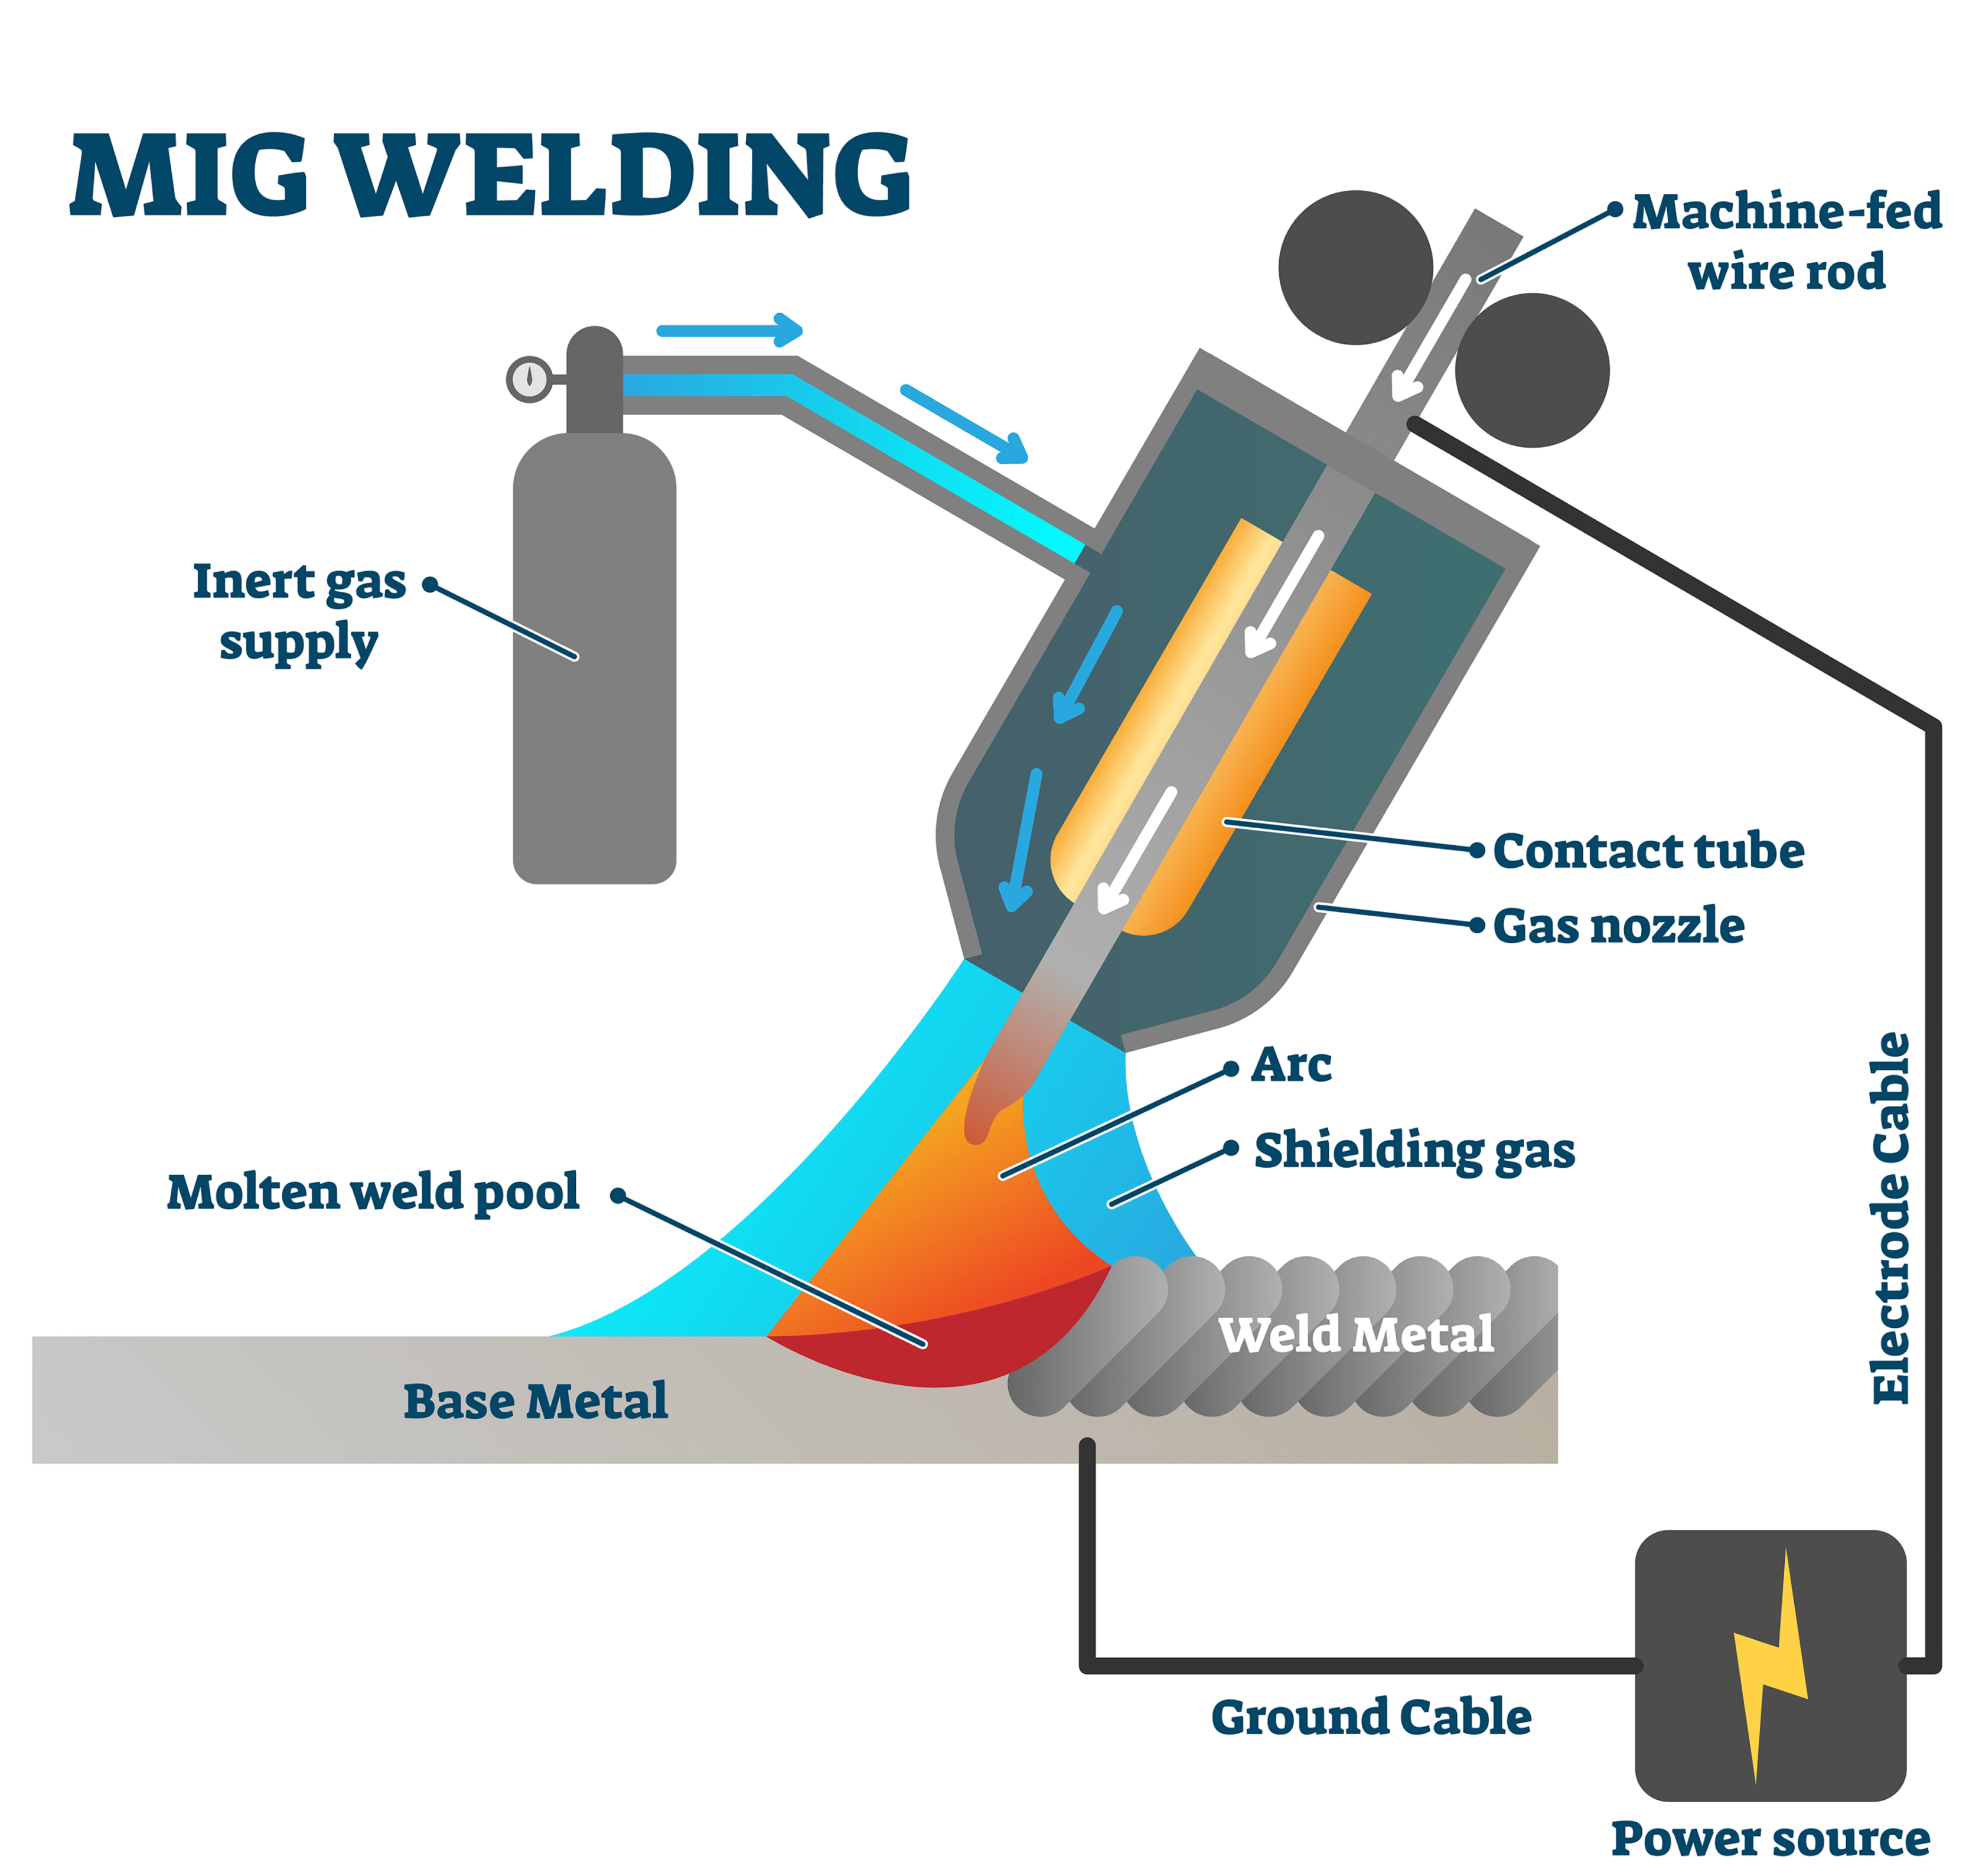 MIG welding image